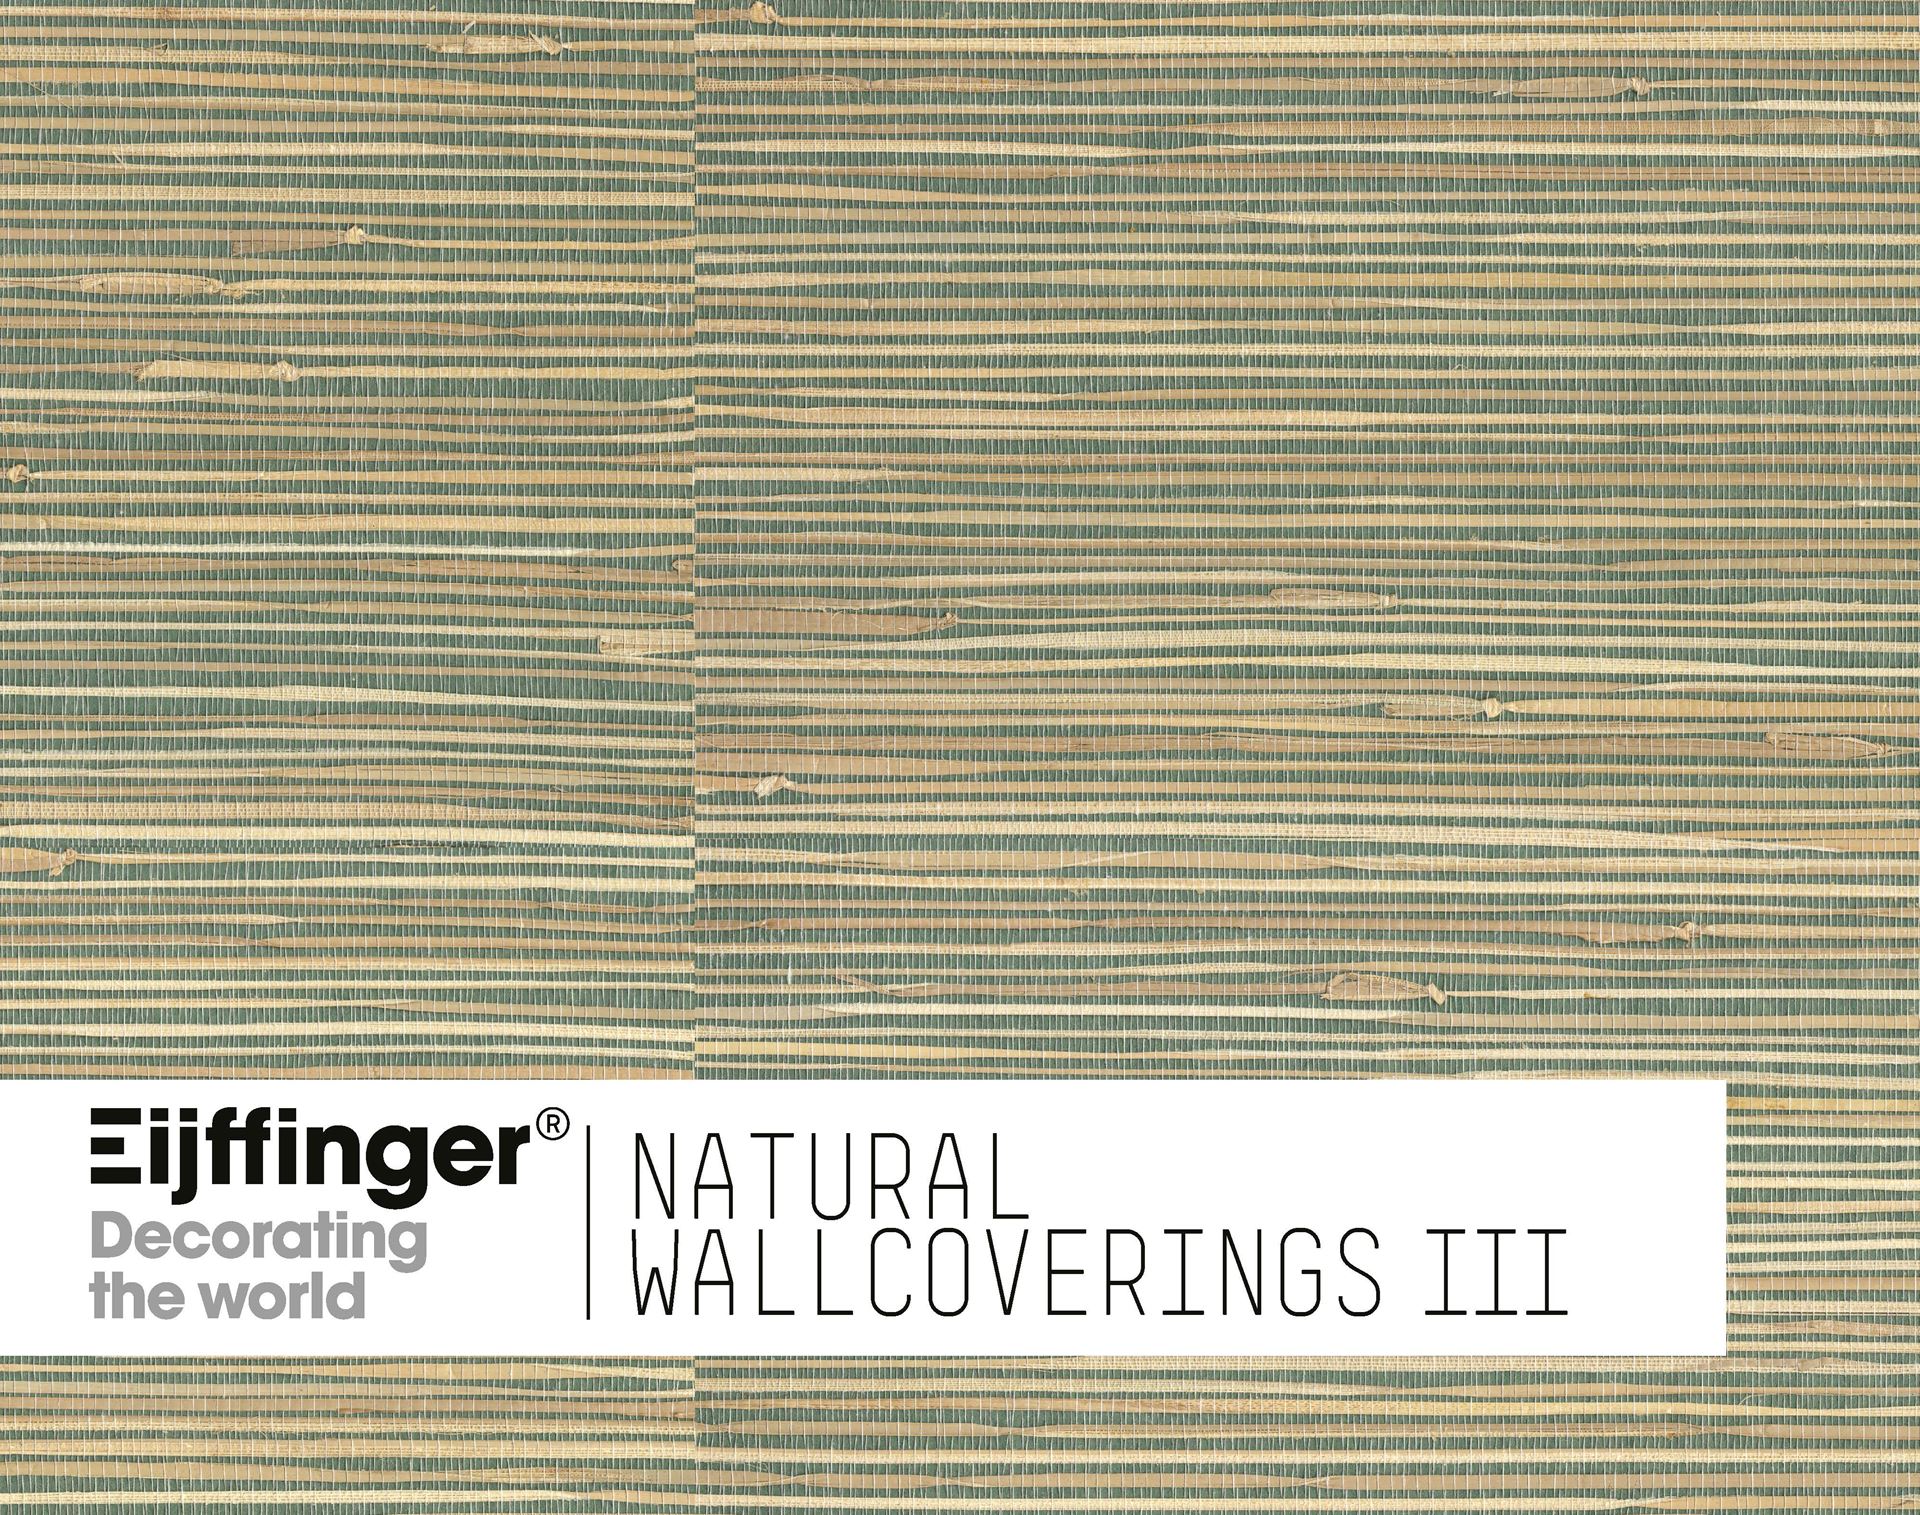 Eijffinger tapete - Natural Wallcoverings III